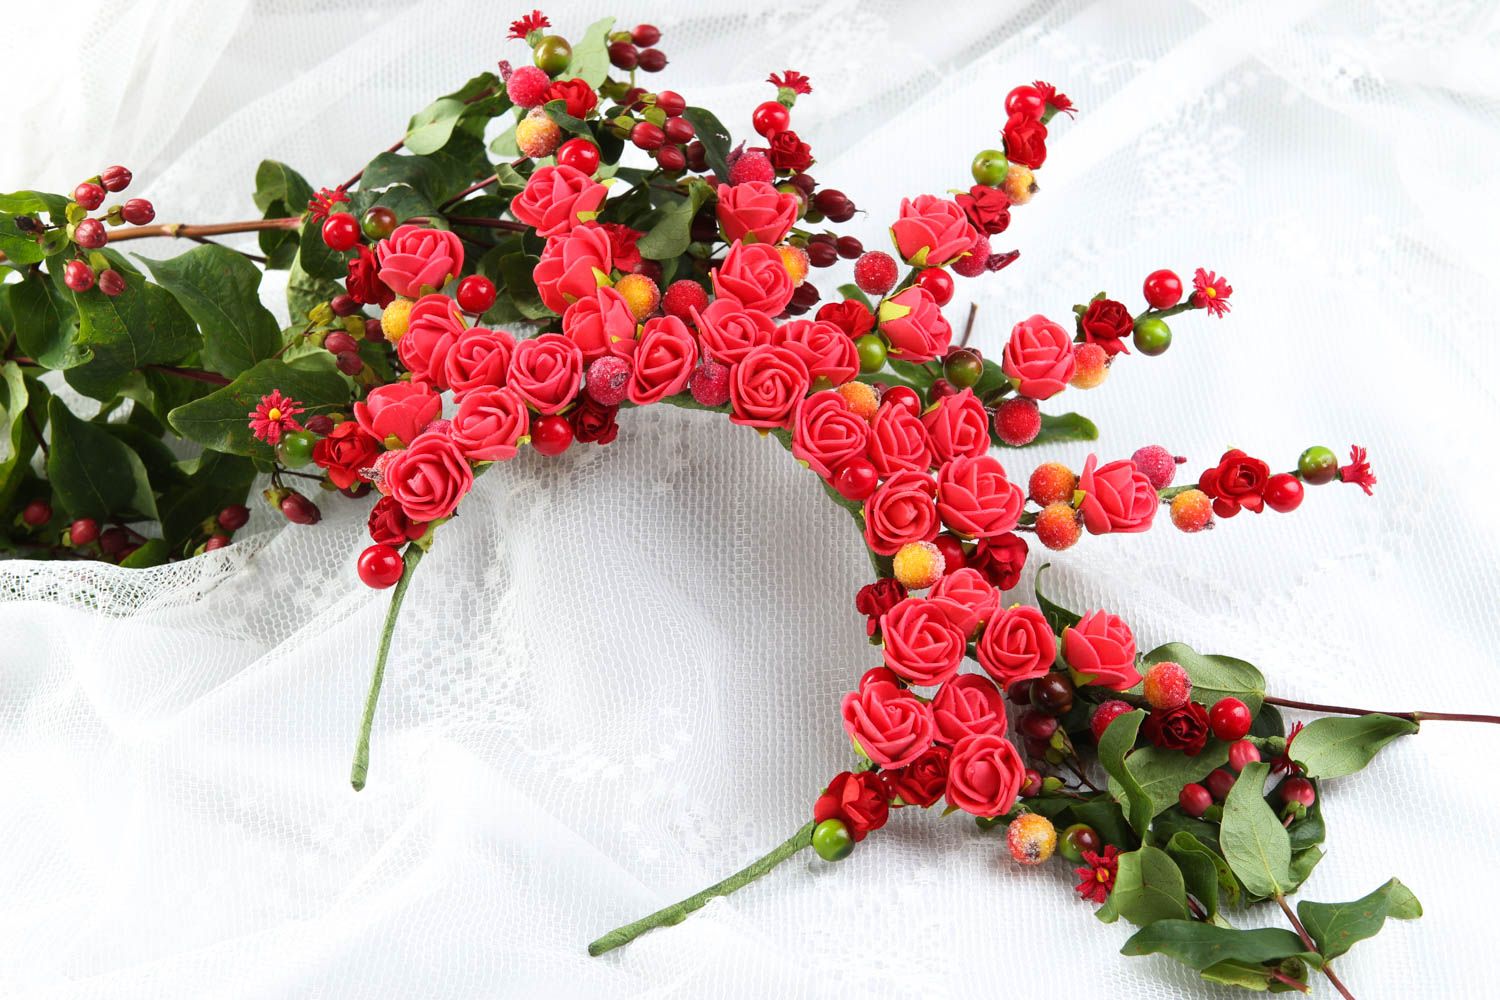 Обруч с цветами ручной работы обруч на голову авторское украшение с розами фото 1